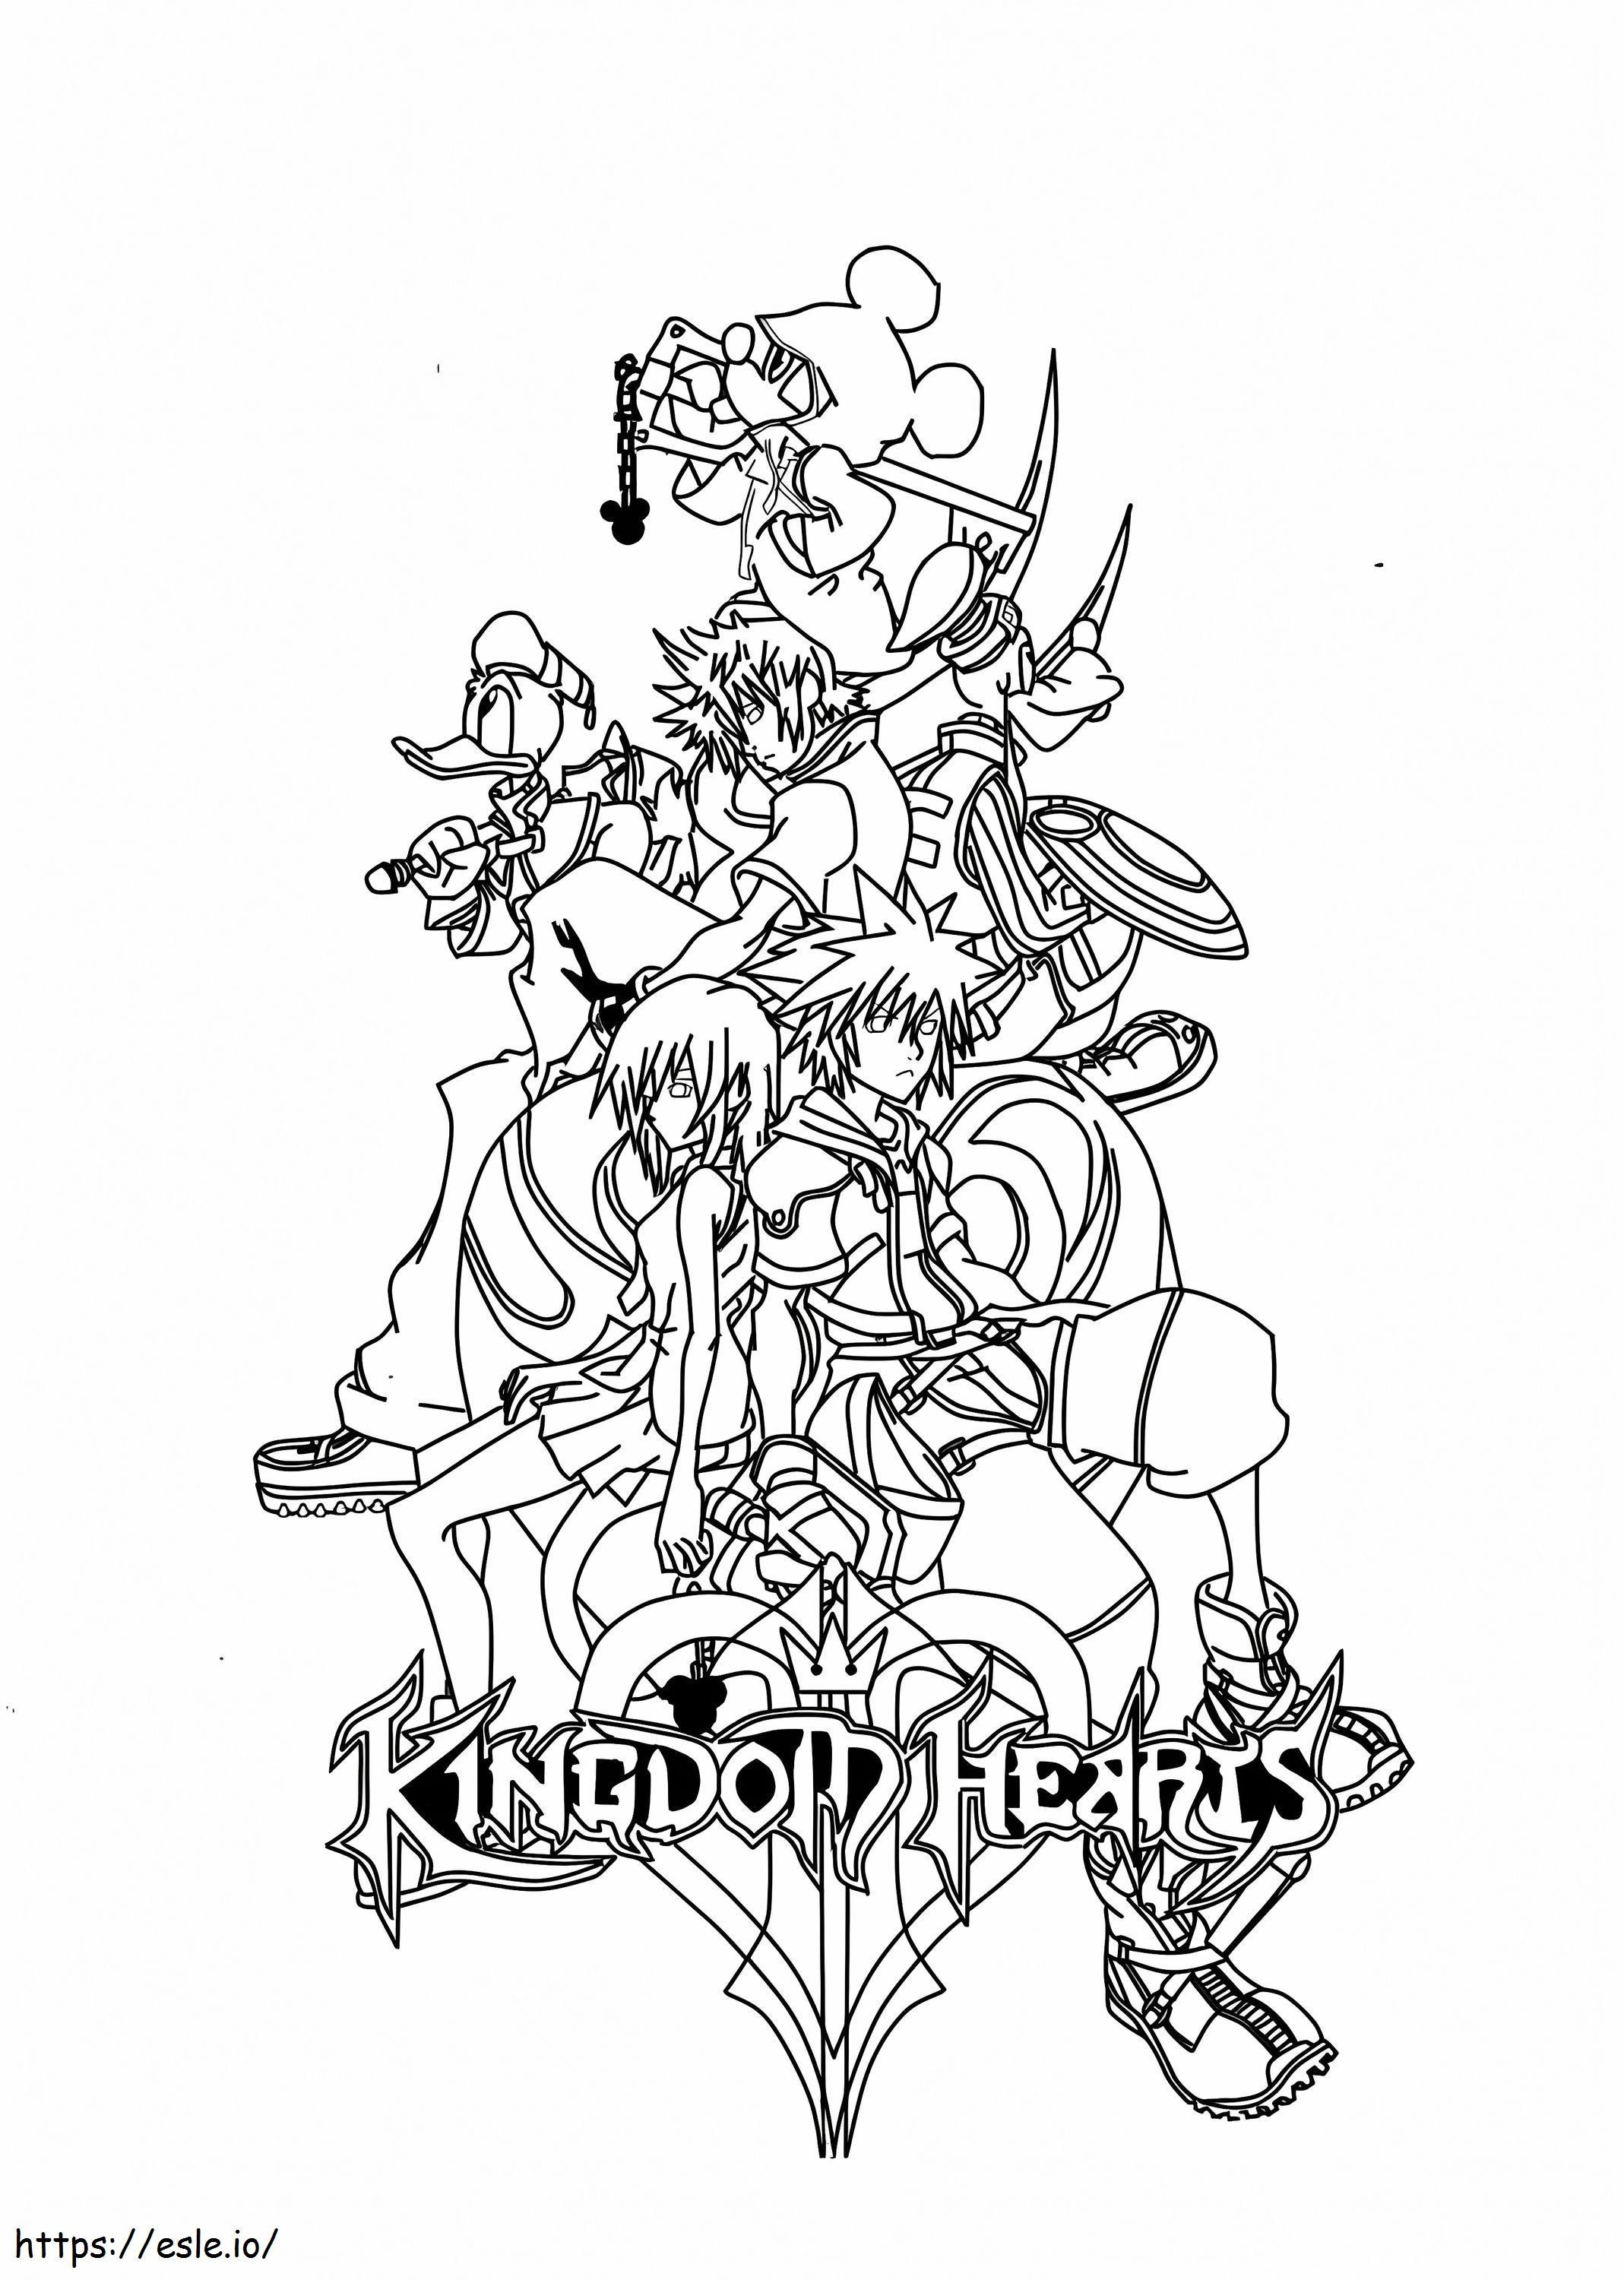 Karakterek a Kingdom Heartsből kifestő